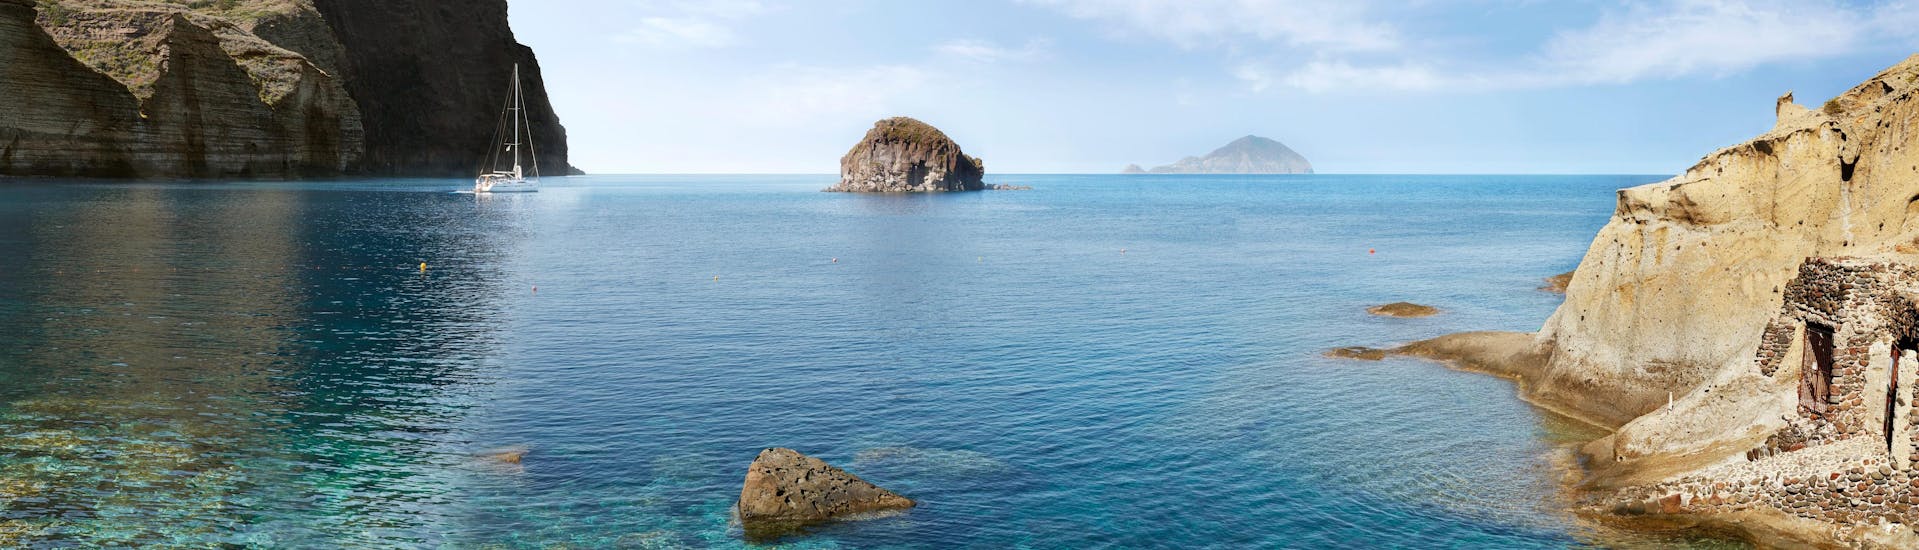 Vista sulla bellissima spiaggia di Pollara, che si può visitare durante una gita in barca all'Isola di Salina.